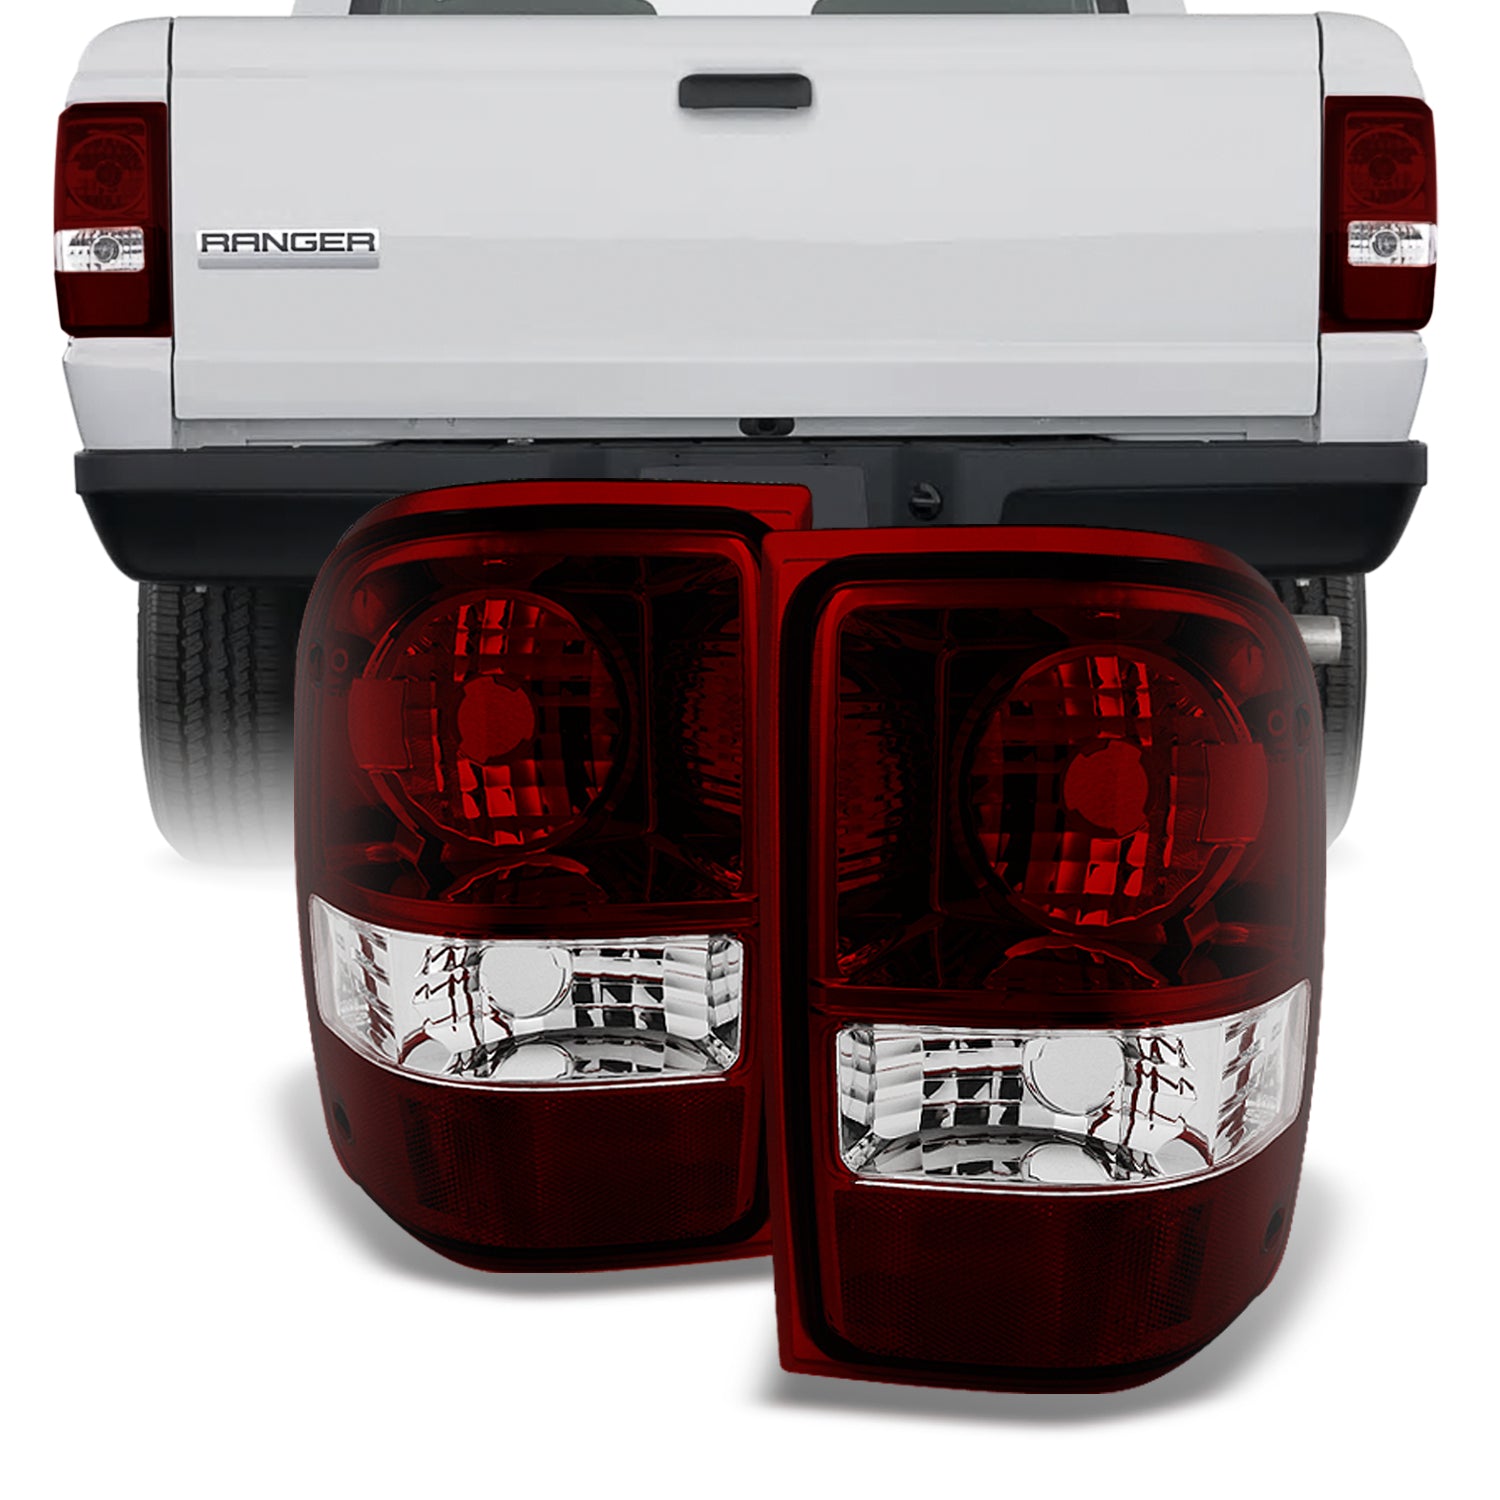 AKKON - For Ford Ranger Pickup Truck Dark Red Rear Tail Lights Brake L